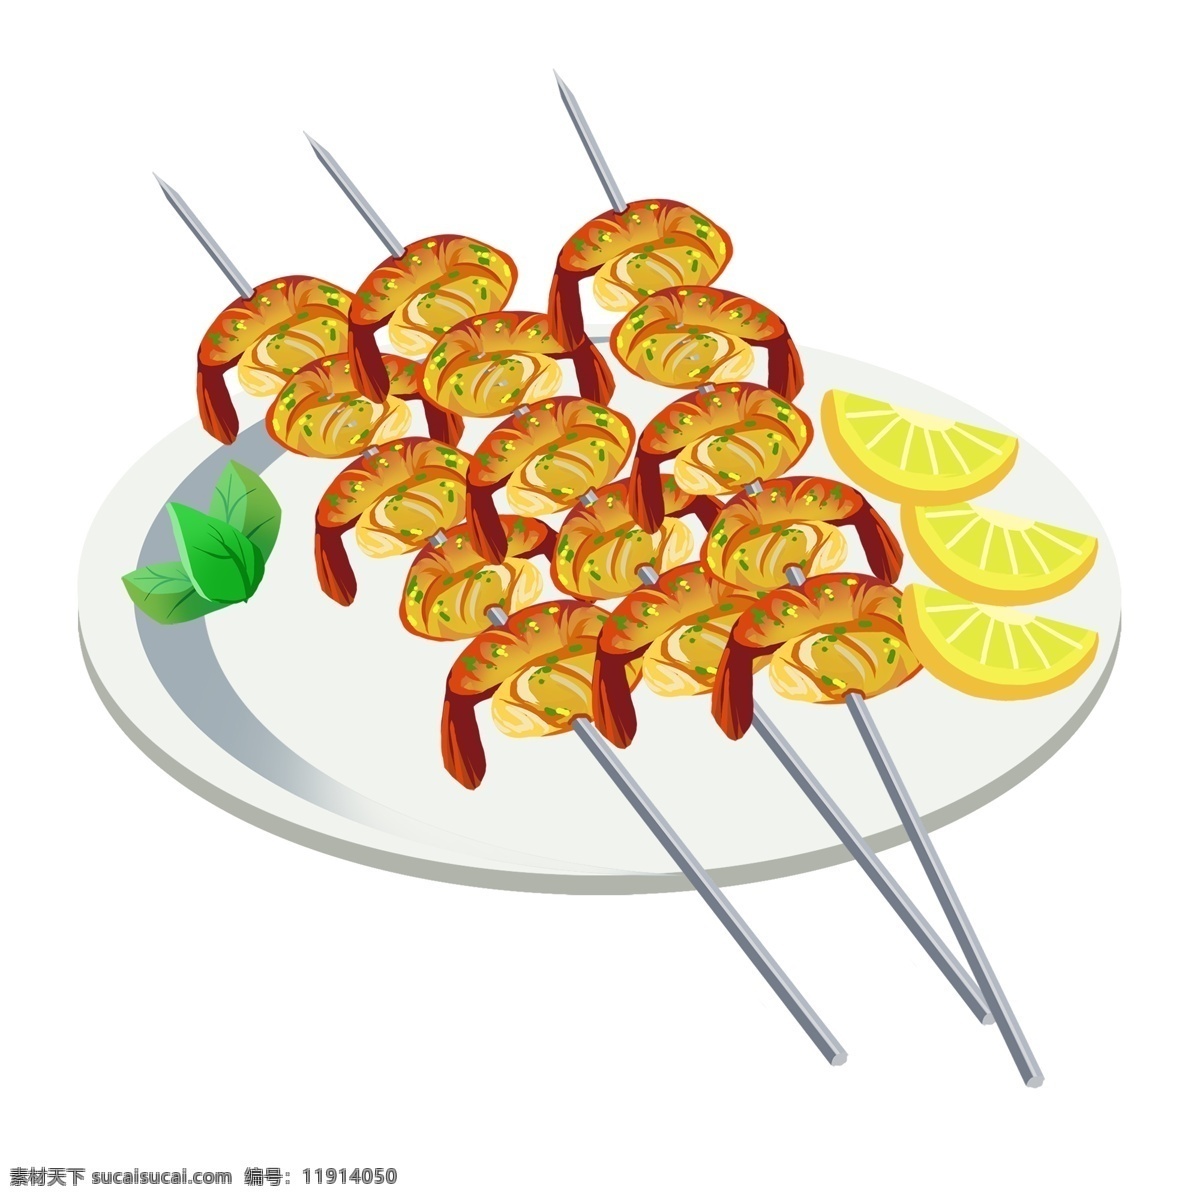 烧烤 基围虾 柠檬 片 美食 撸 串 手绘 食物 小吃 撸串 烤肉 烤虾 柠檬片